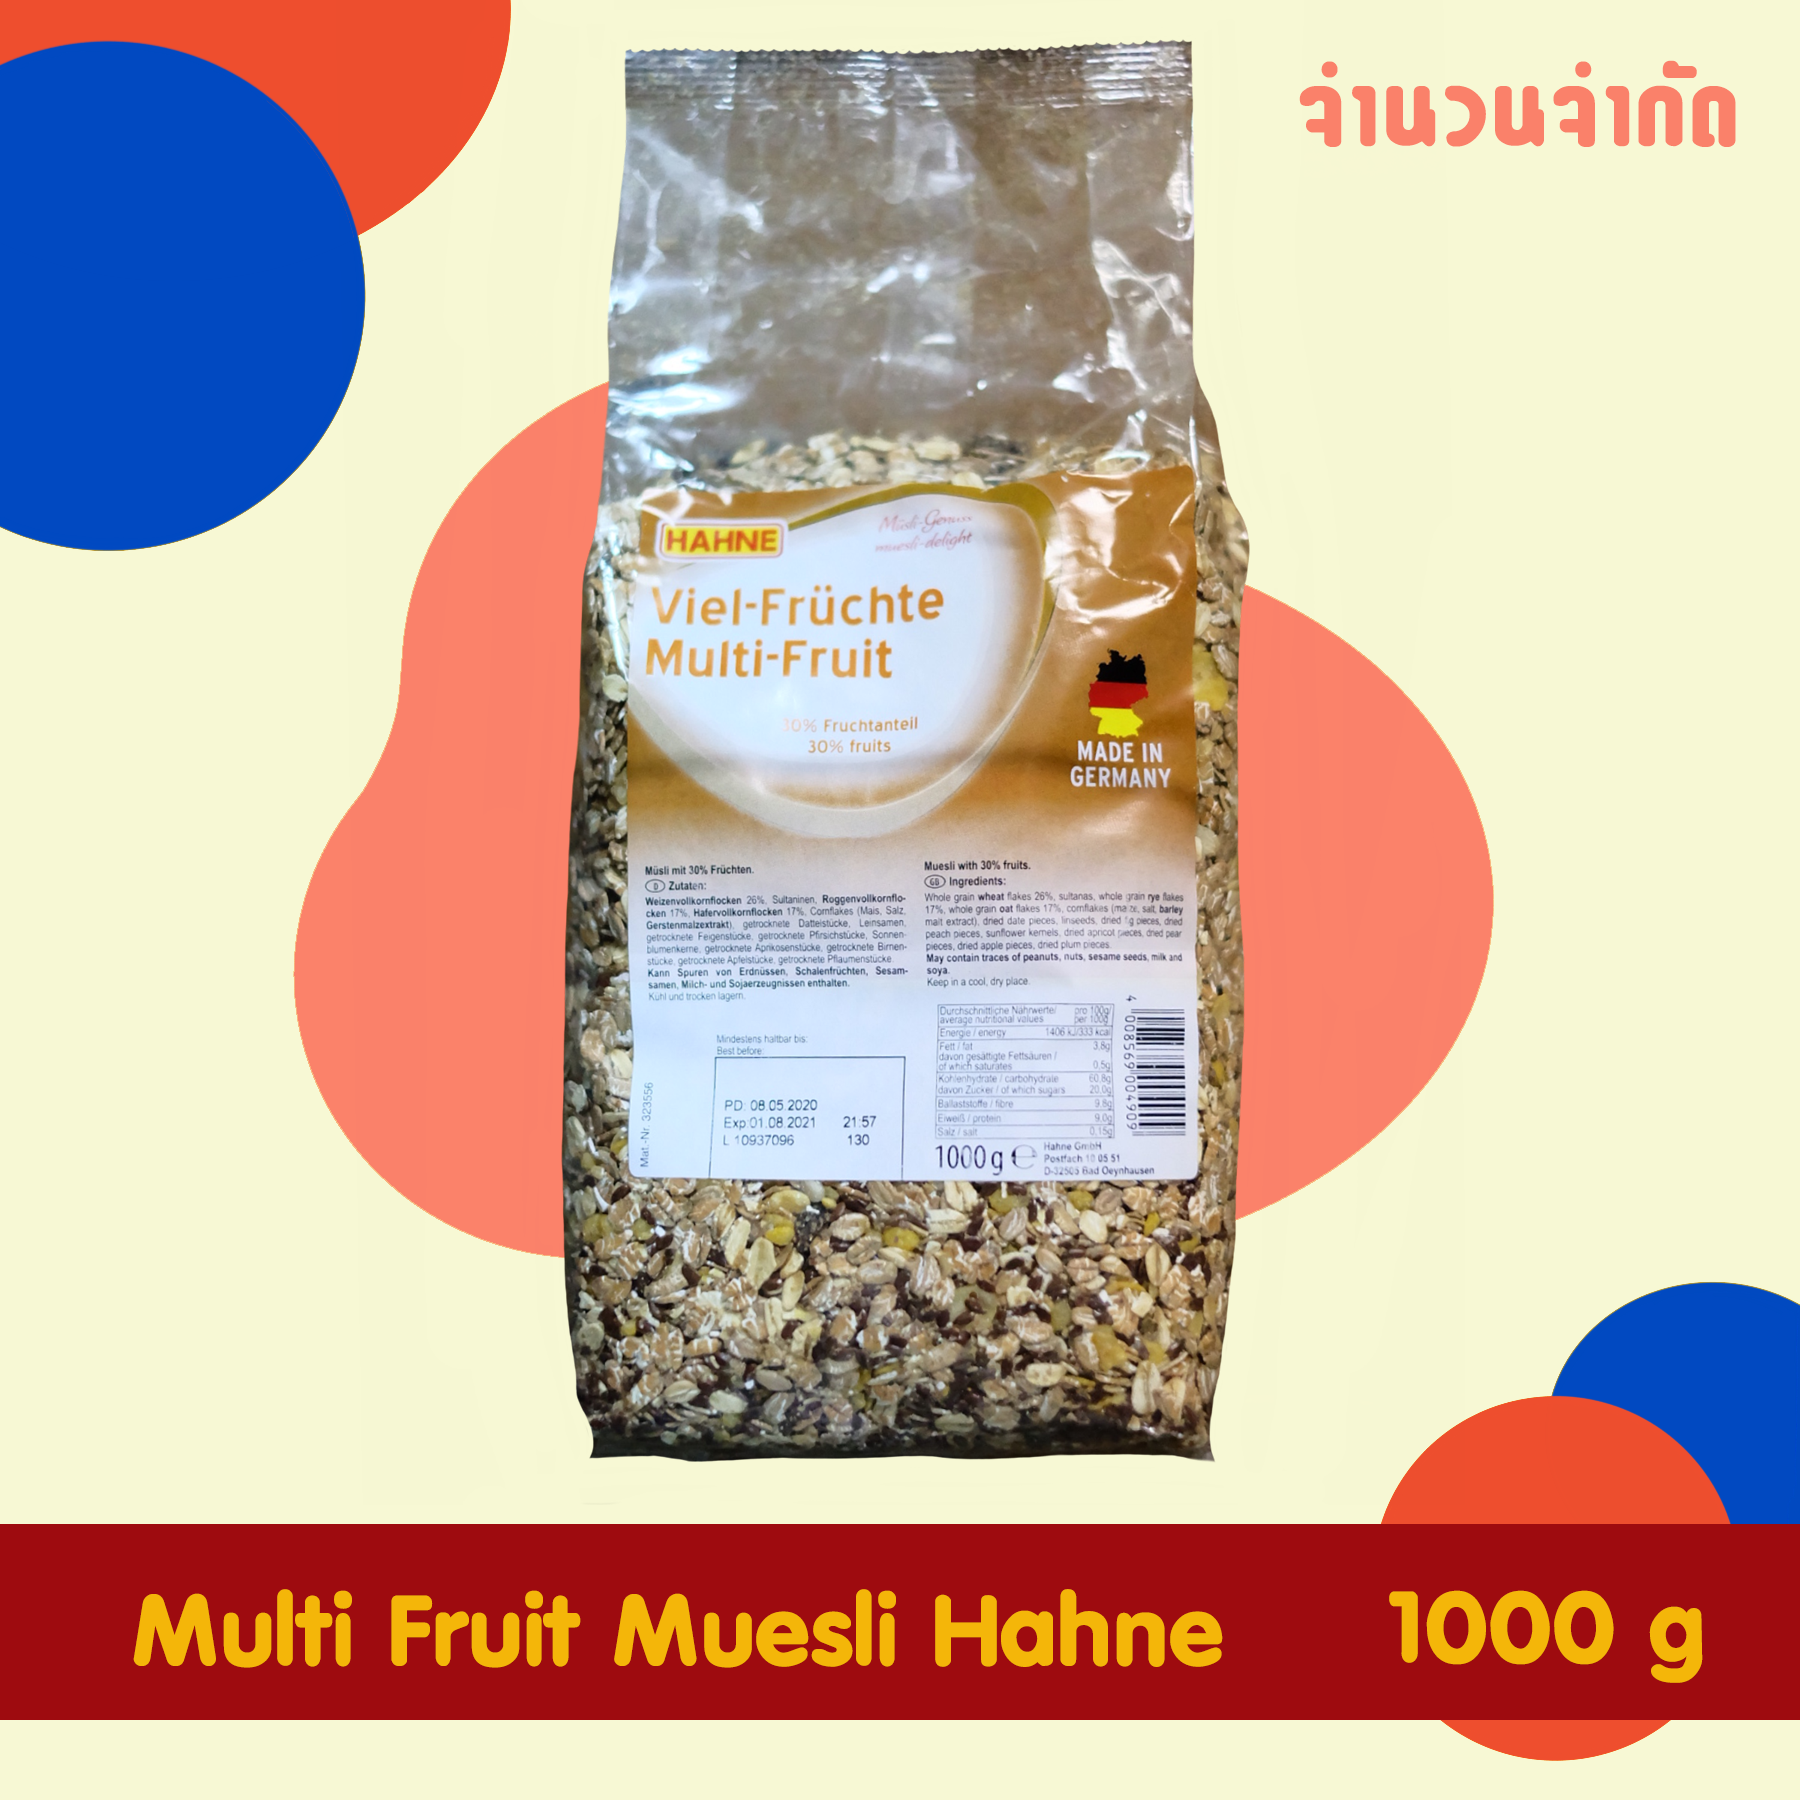 ราคาพิเศษจำนวนจำกัด ฮาทเน่ มูสลี่ ผสมผลไม้ Multi Fruit Muesli Hahne 1000g อาหารเช้าเพื่อสุขภาพ อาหารเช้า สำหรับคนรักสุขภาพ